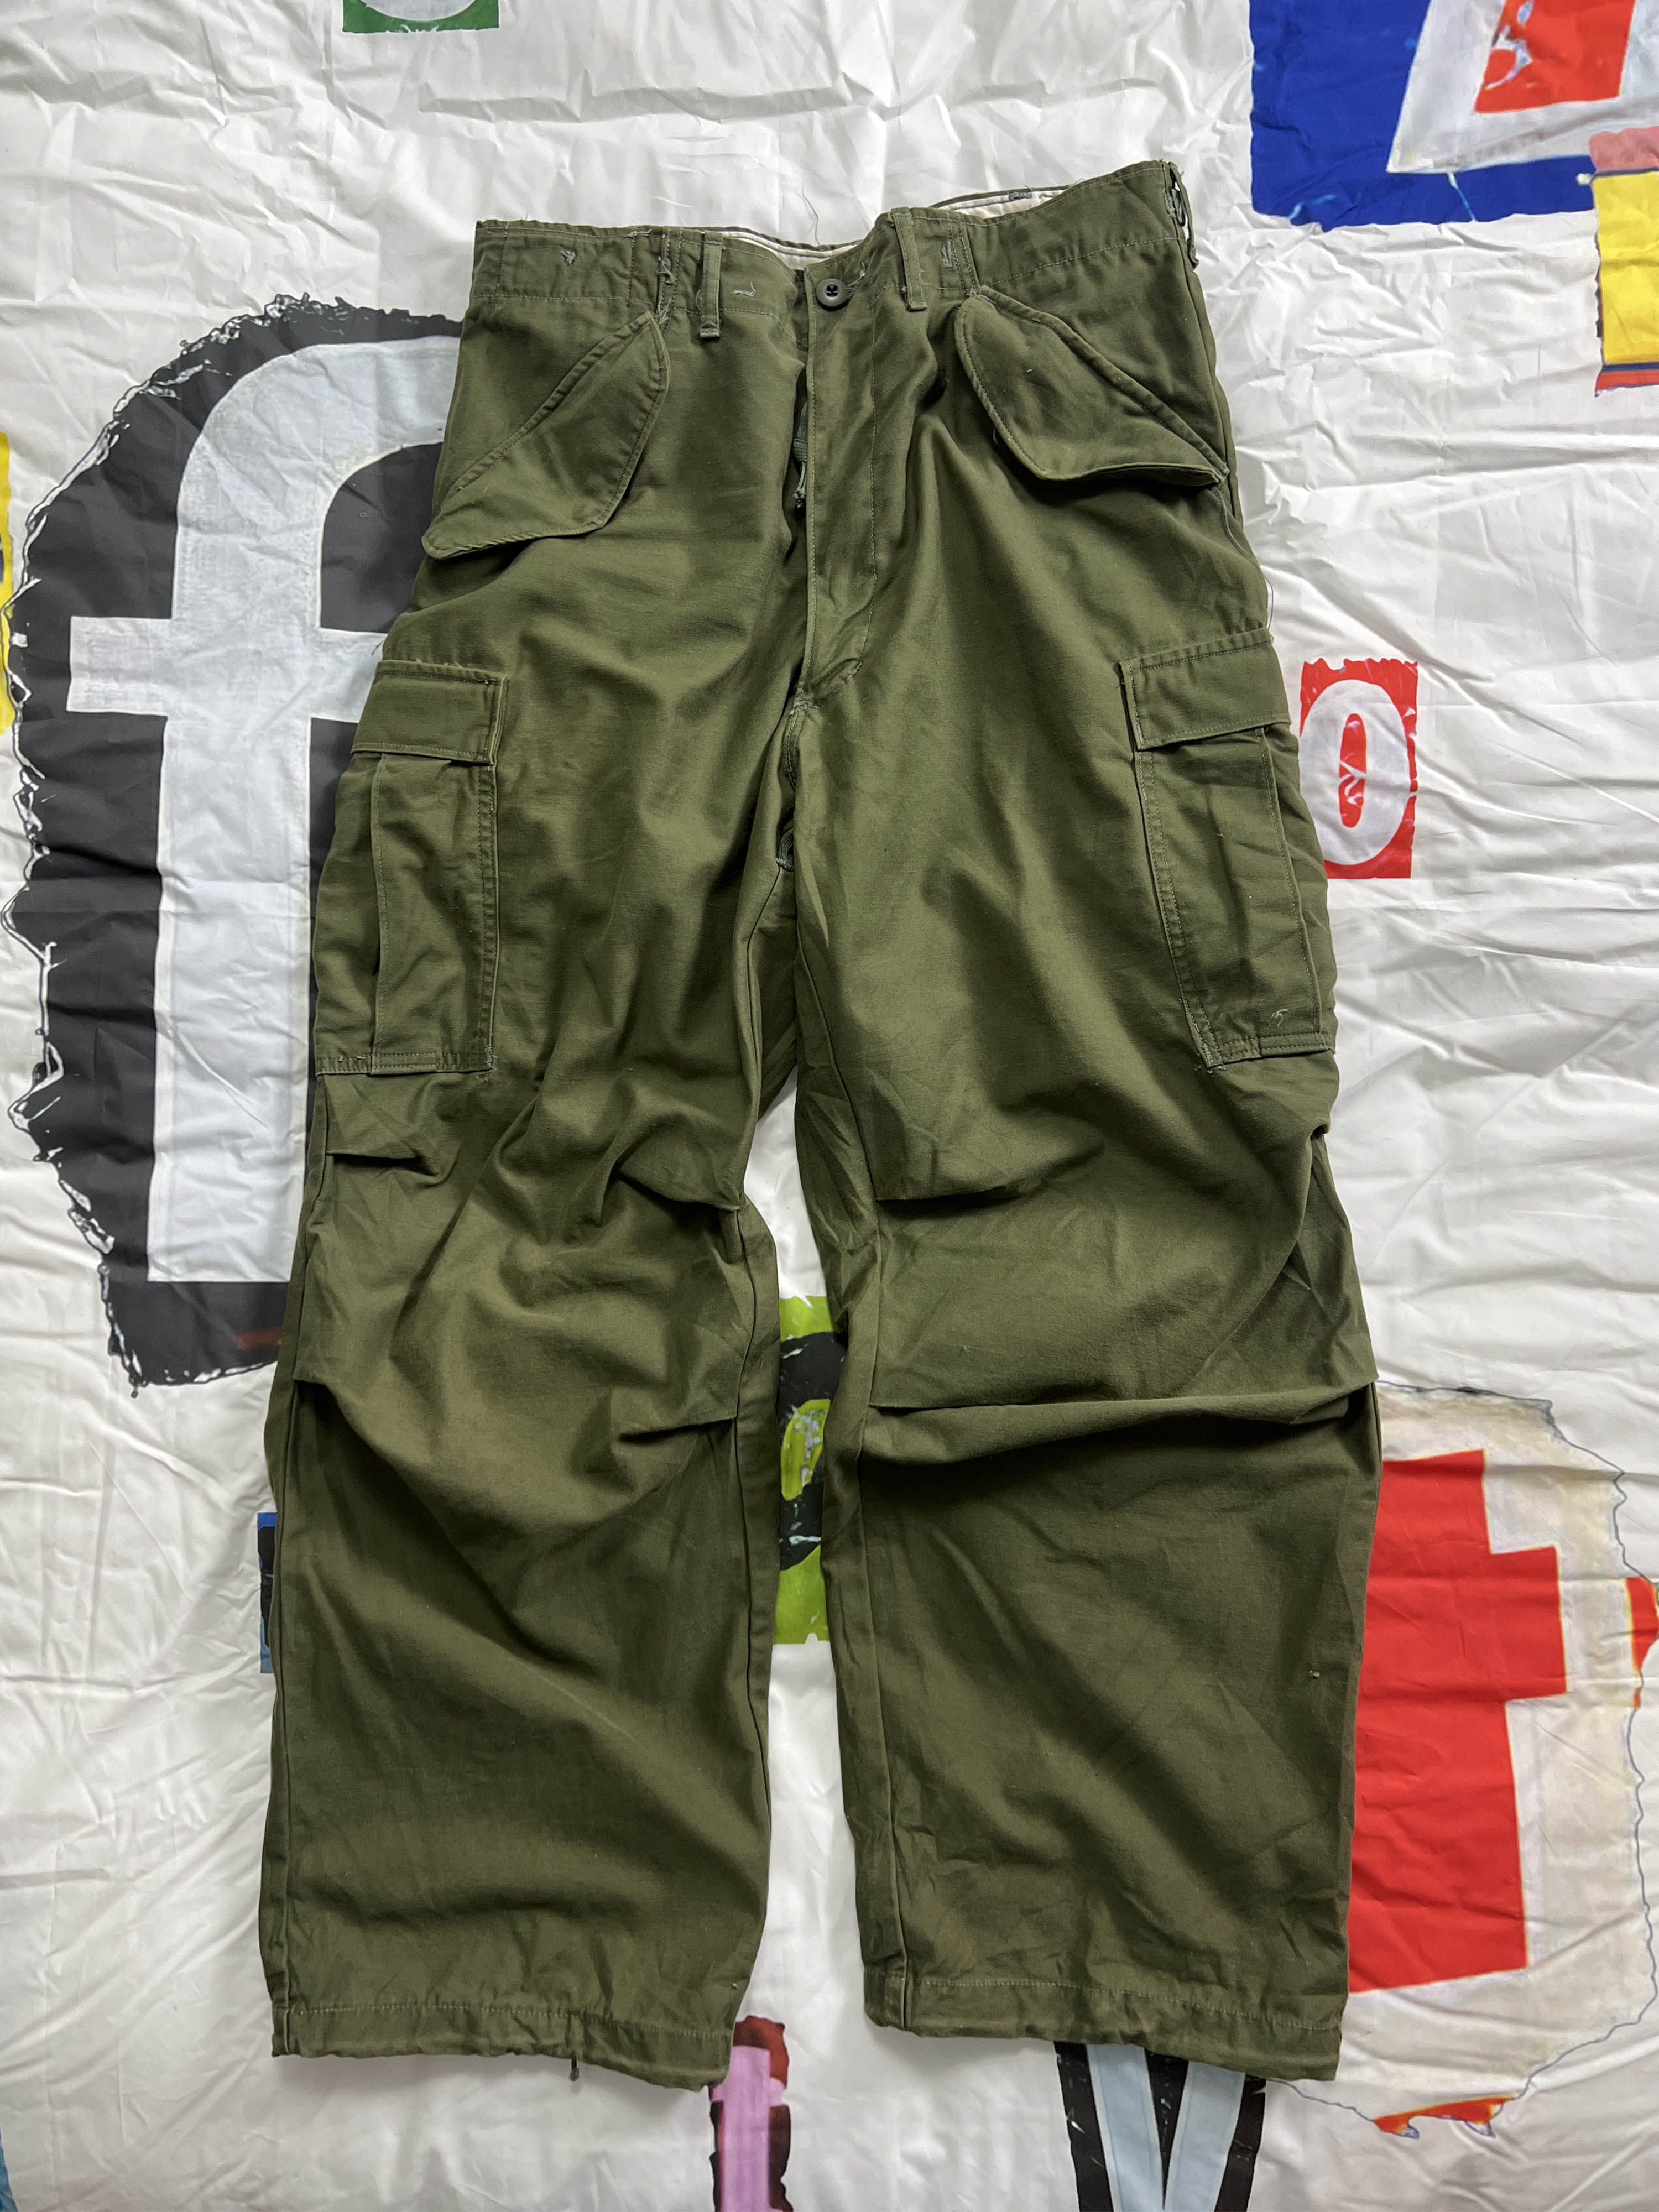 70s og M-65 field pants